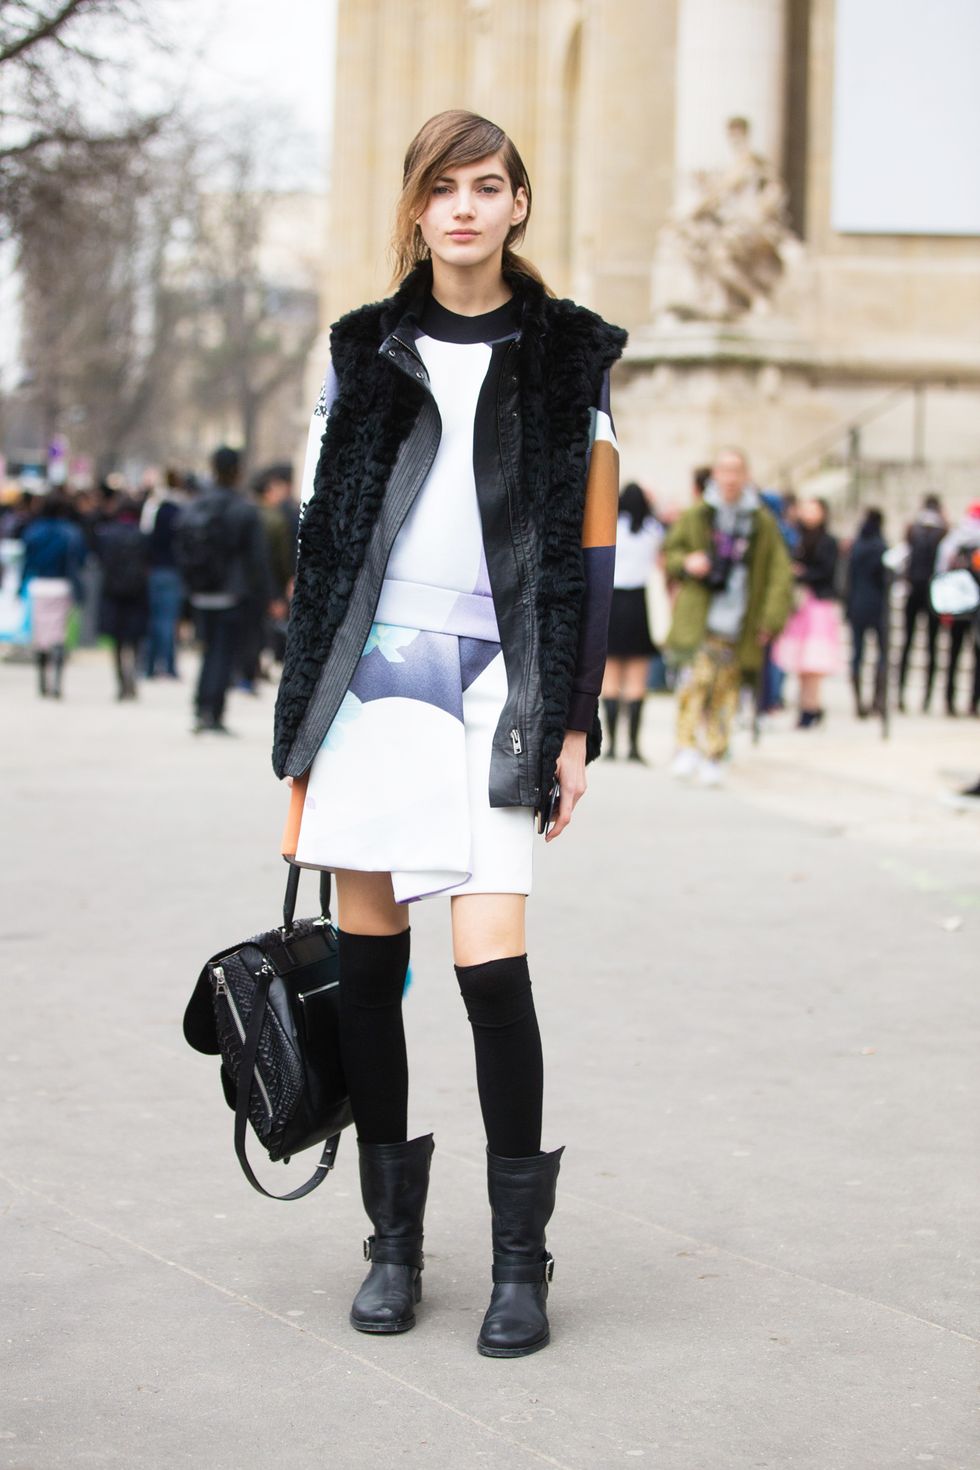 Scopri come indossare le parigine, le calze sexy per i tuoi look da giorno e da sera con un occhio alla moda primavera 2017.